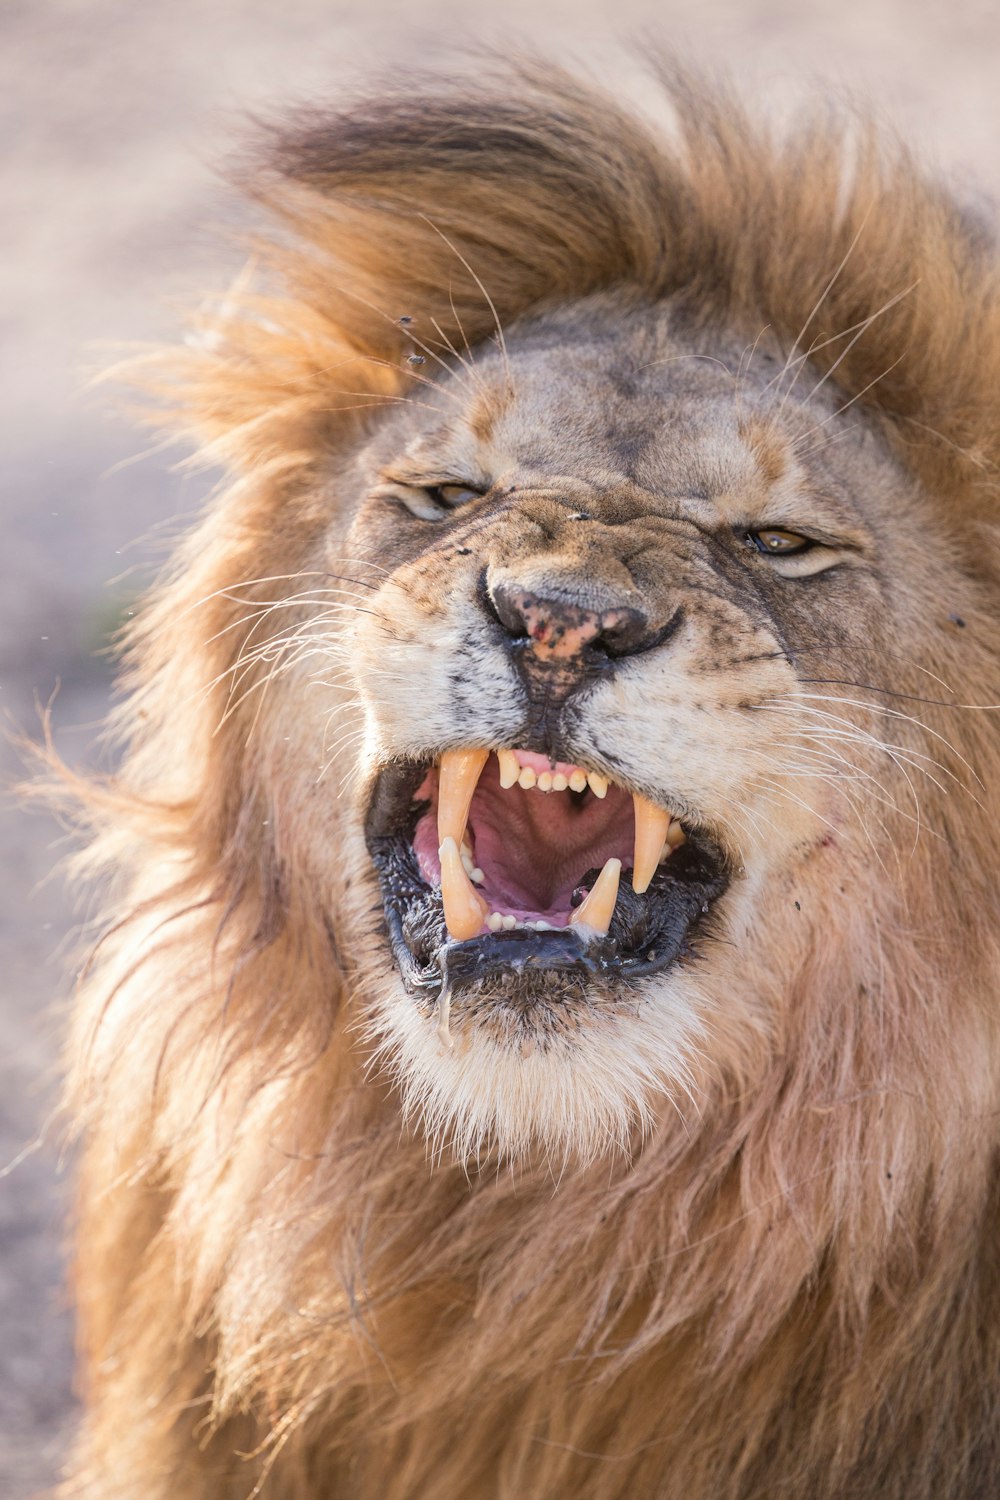 What is Kokoro? - Lions Roar